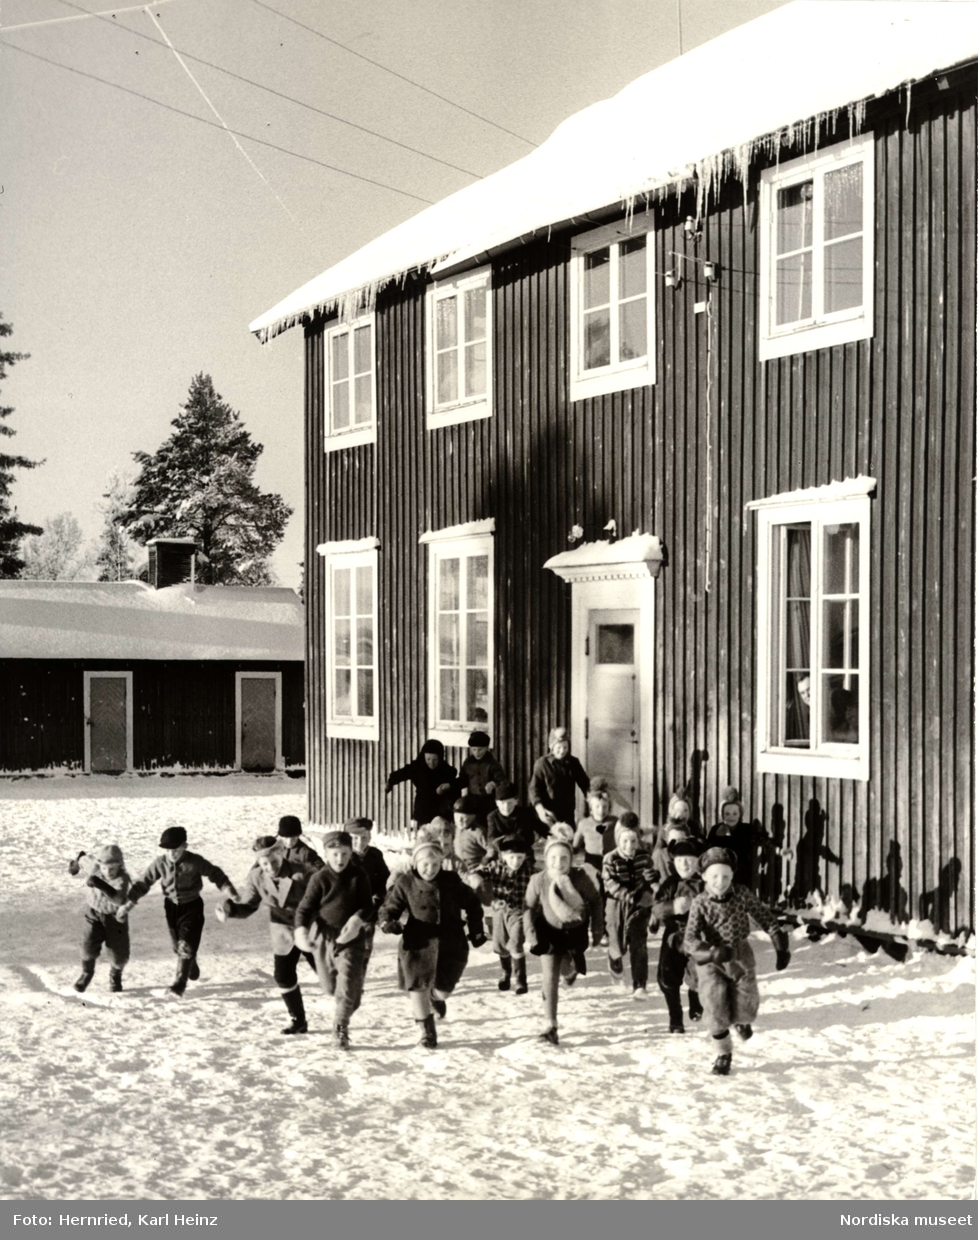 Skola i Korpilombolo, Norrbotten. Exteriör med skolbyggnad och skolbarn ute i snö